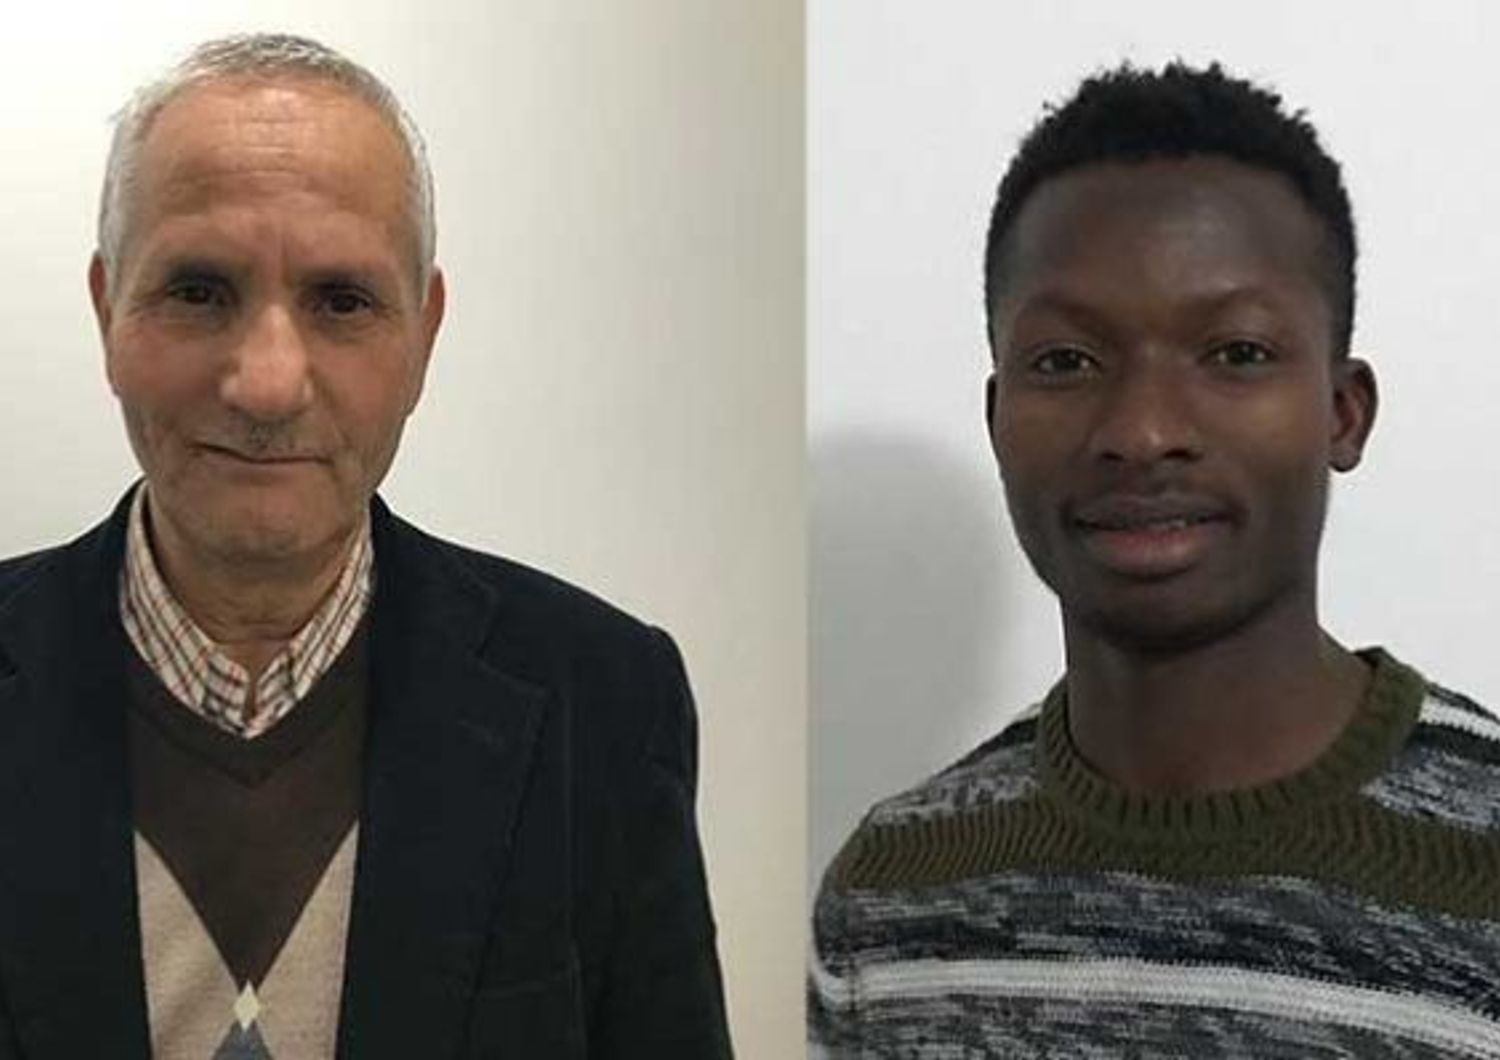 I due consiglieri comunali africani eletti nel Brindisino per rappresentare gli immigrati